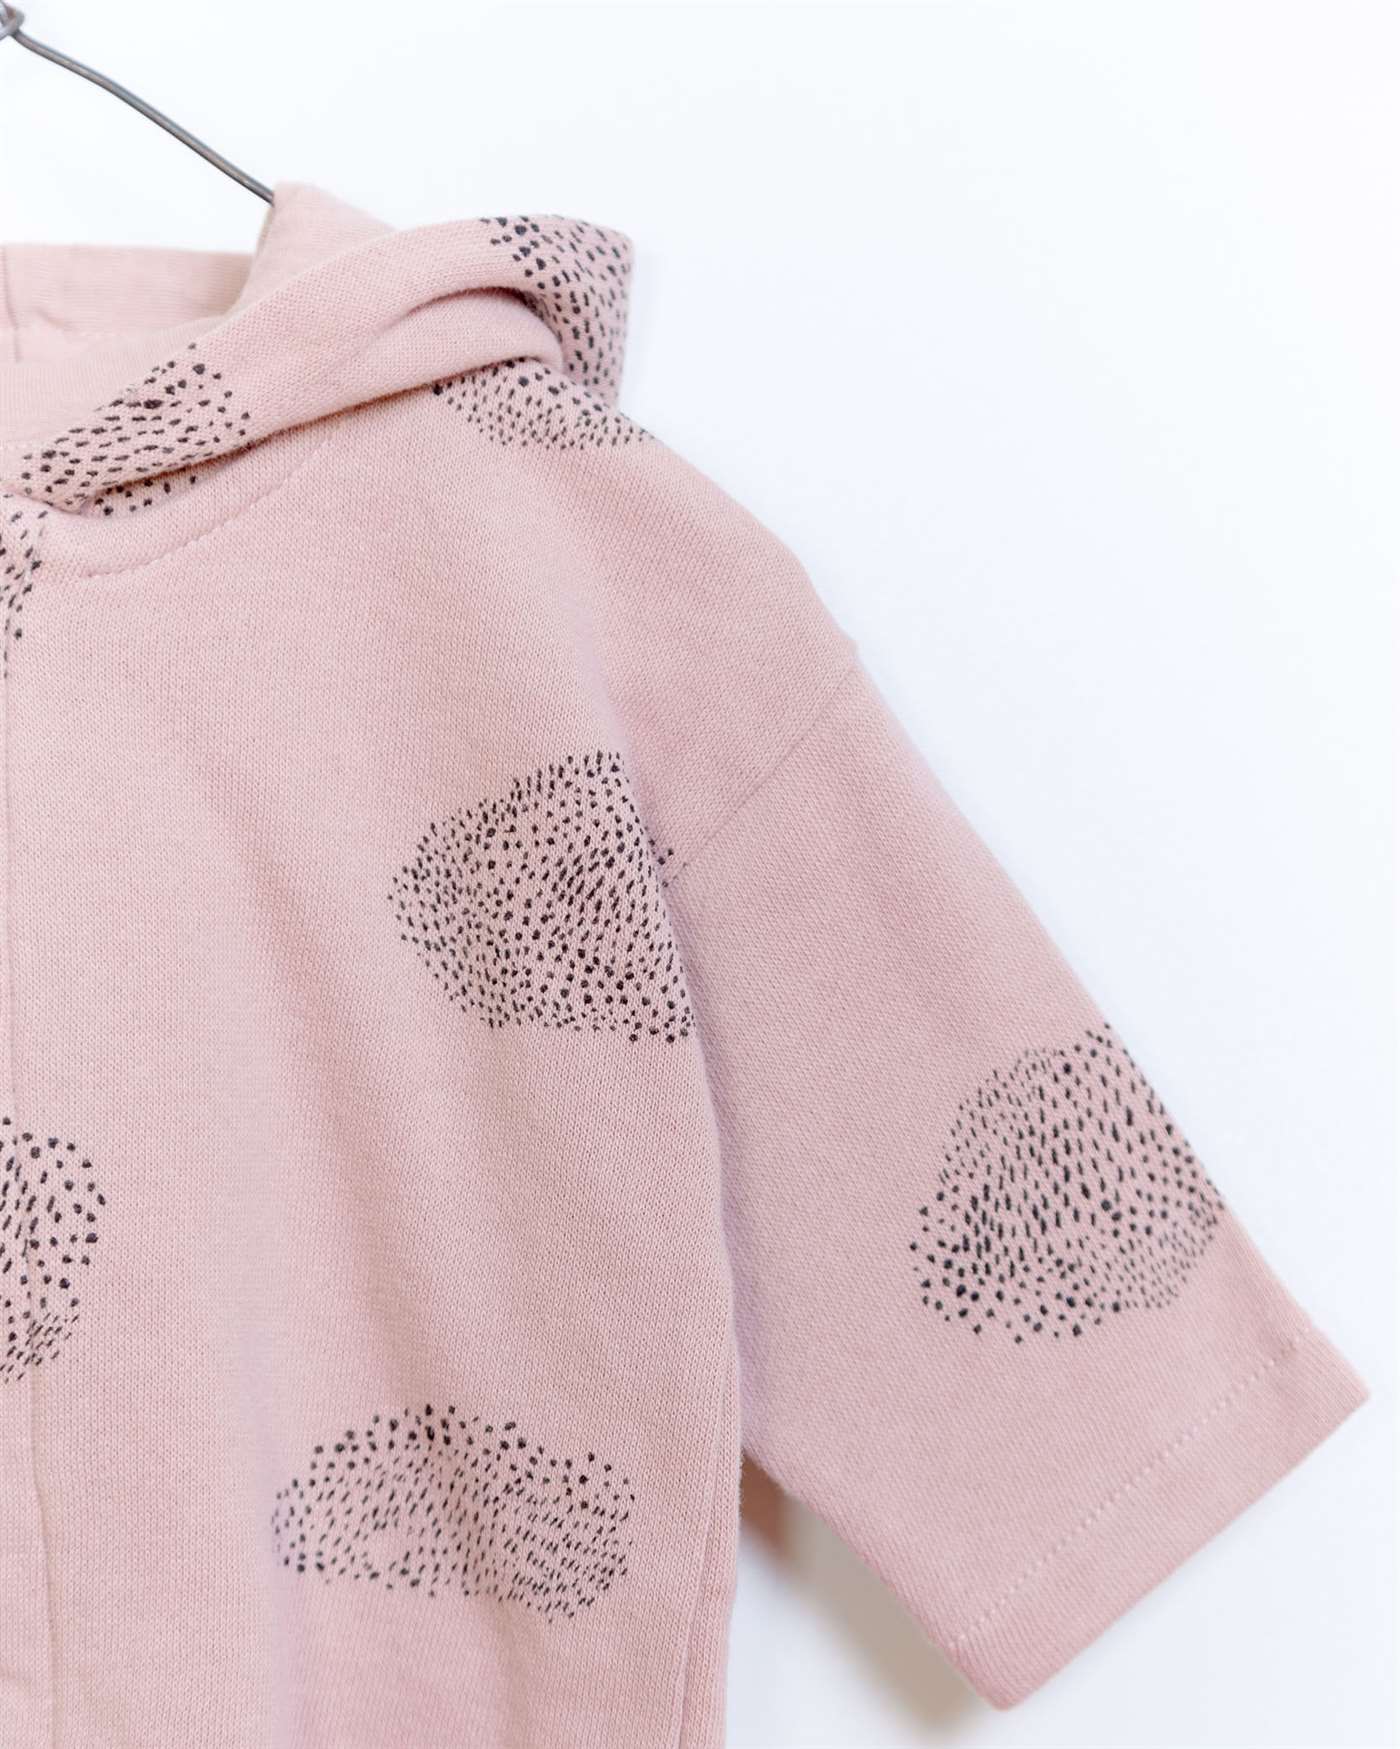 BeeBoo|BeeBoo PlayUp vêtement bébé baby cloth veste jacket felpa coton bio organic cotton rose pink 3